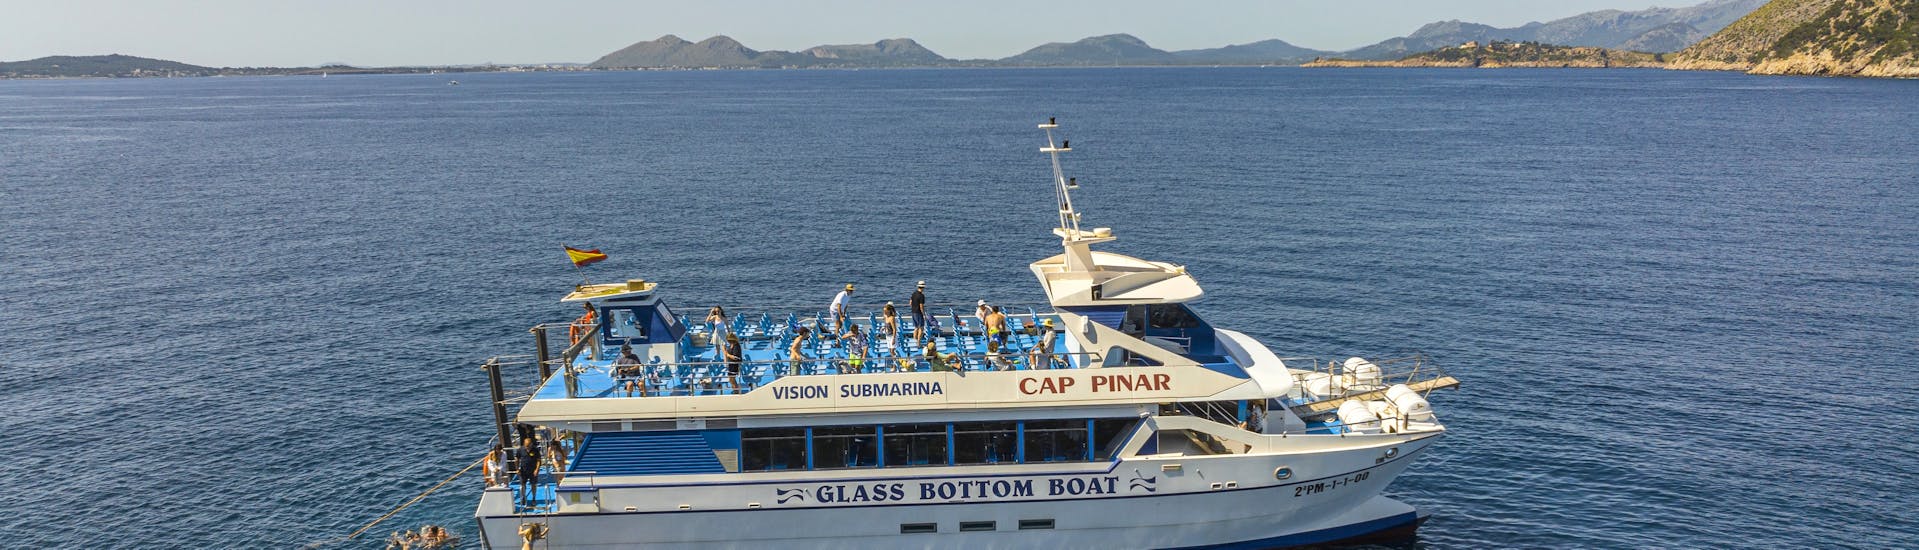 Gente disfrutando a bordo de nuestra embarcación durante un Viaje en Catamarán por la Bahía de Pollença con Natación con Lanchas La Gaviota.